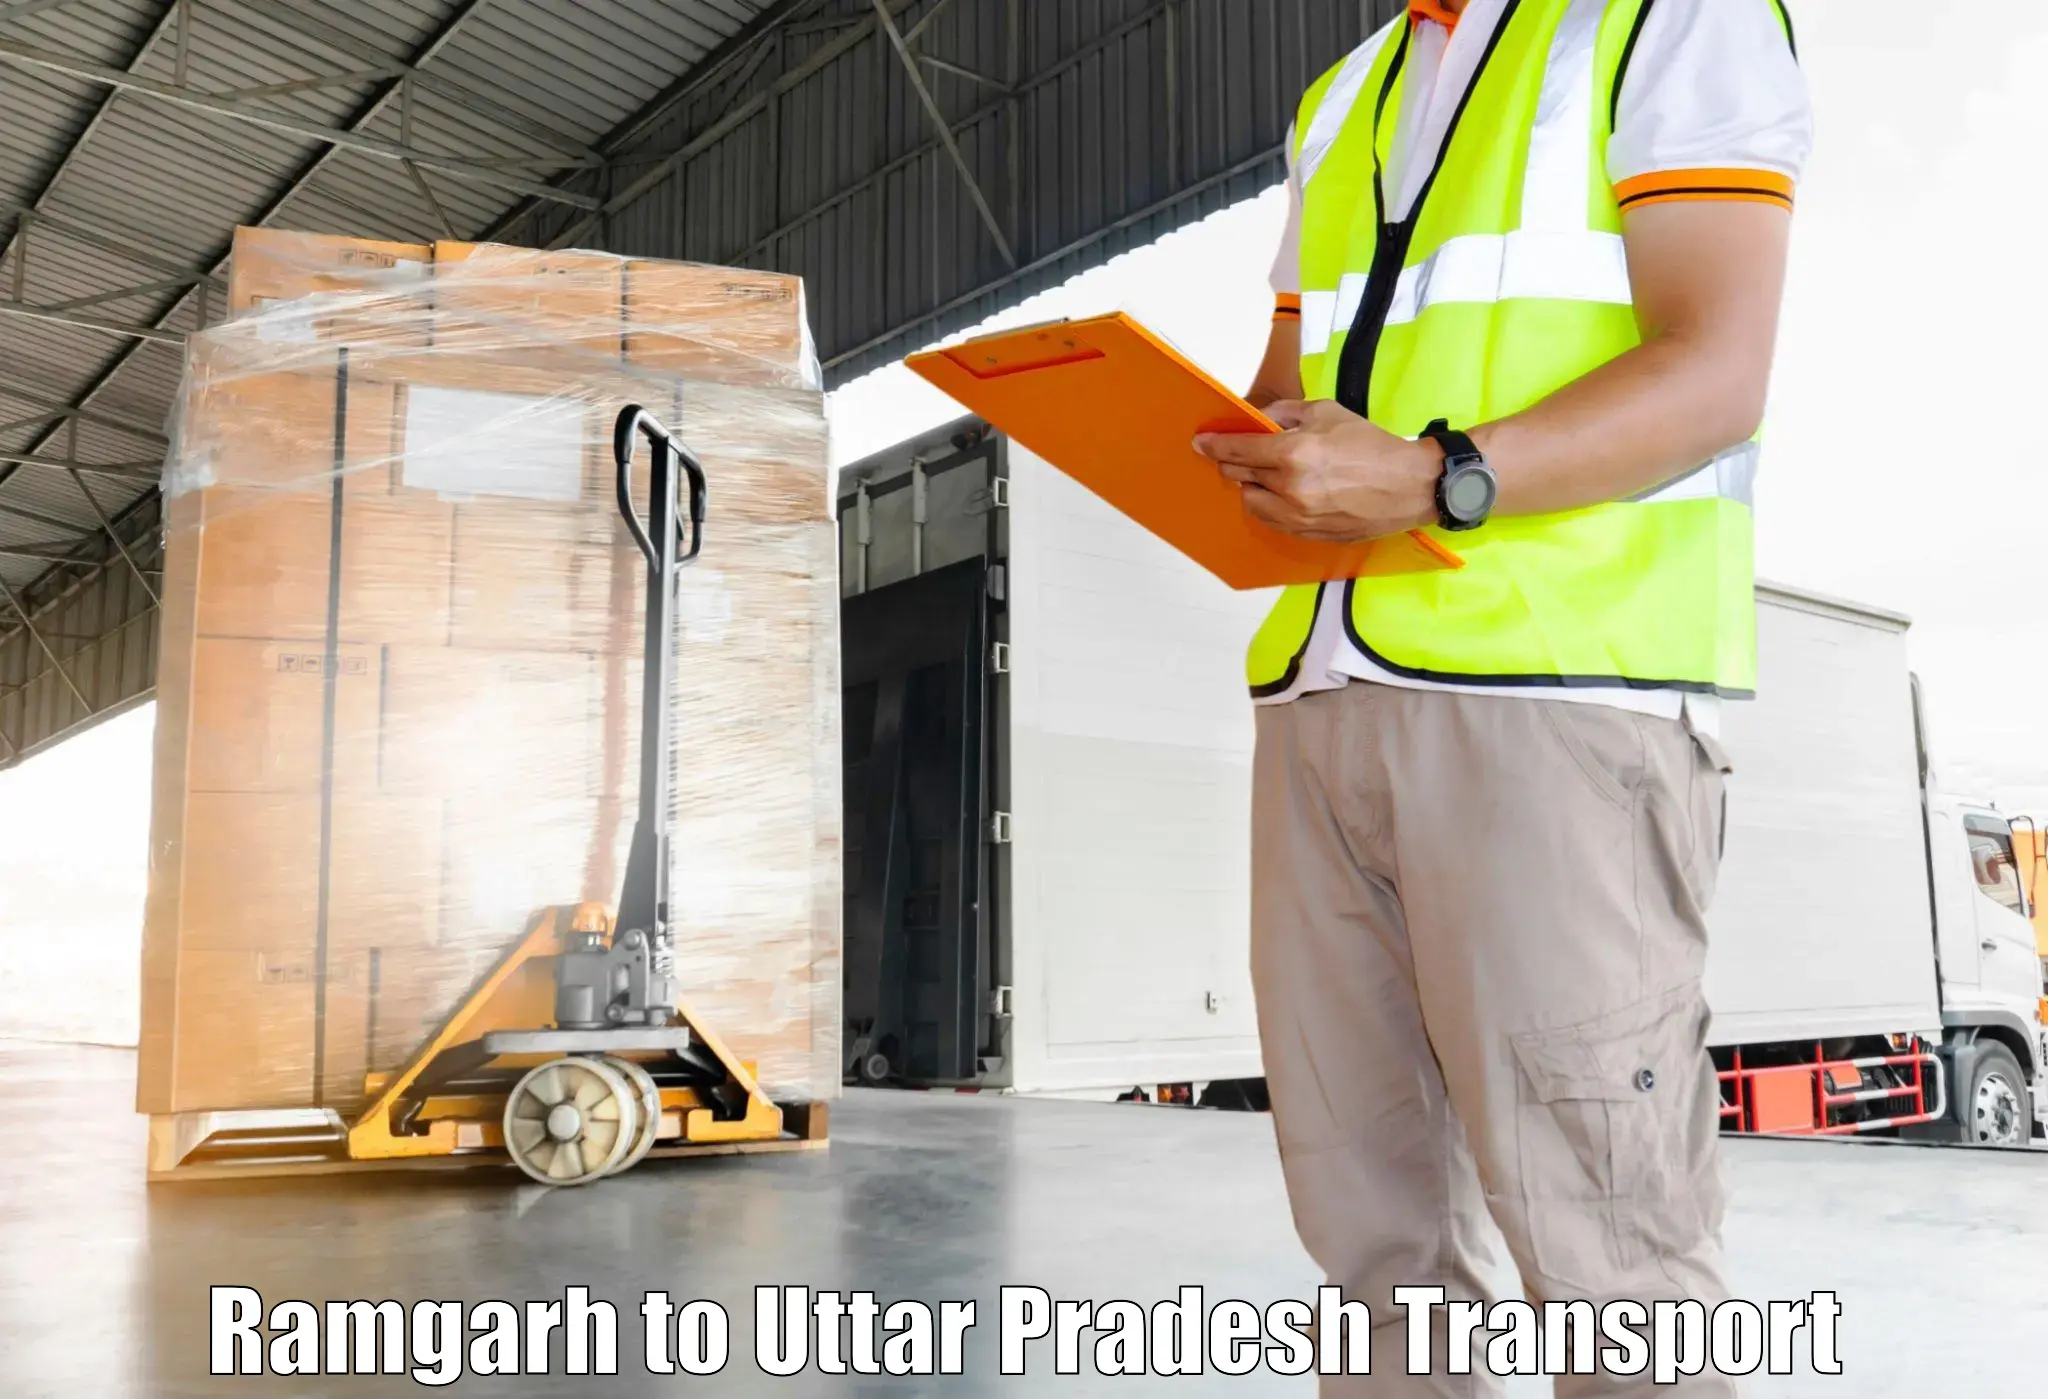 Container transportation services in Ramgarh to Banaras Hindu University Varanasi